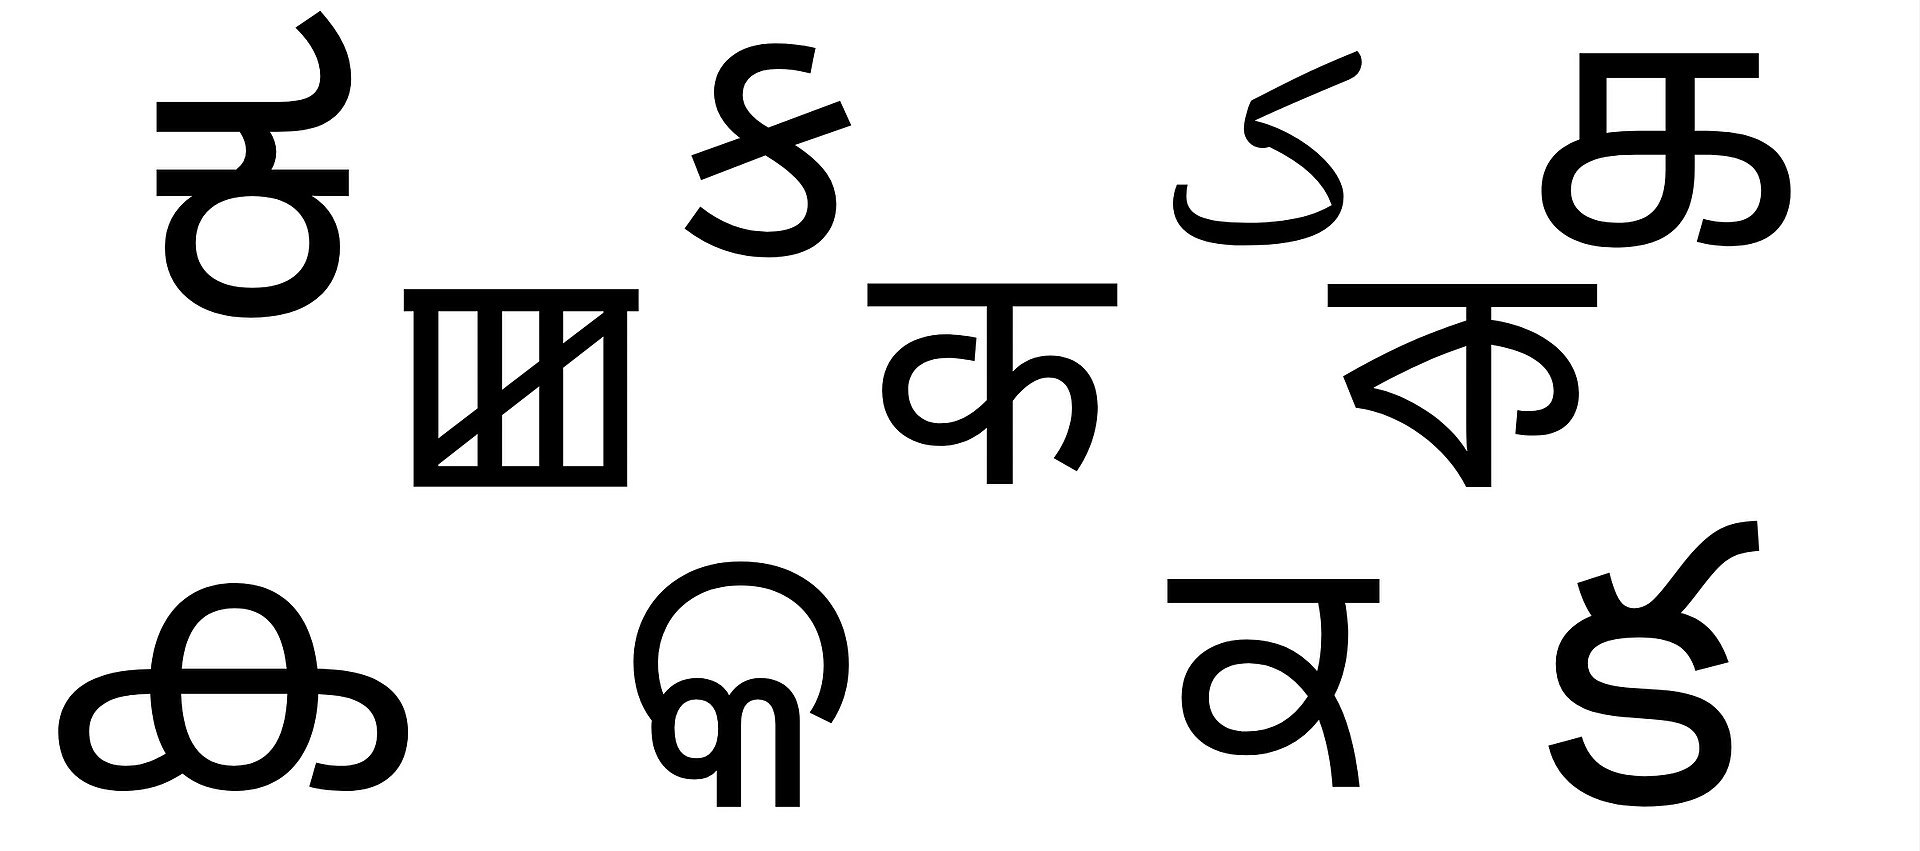 Hindi Vyakaran "र" Different_scripts_of_different_languages_of_India Shayari Shabdkosh